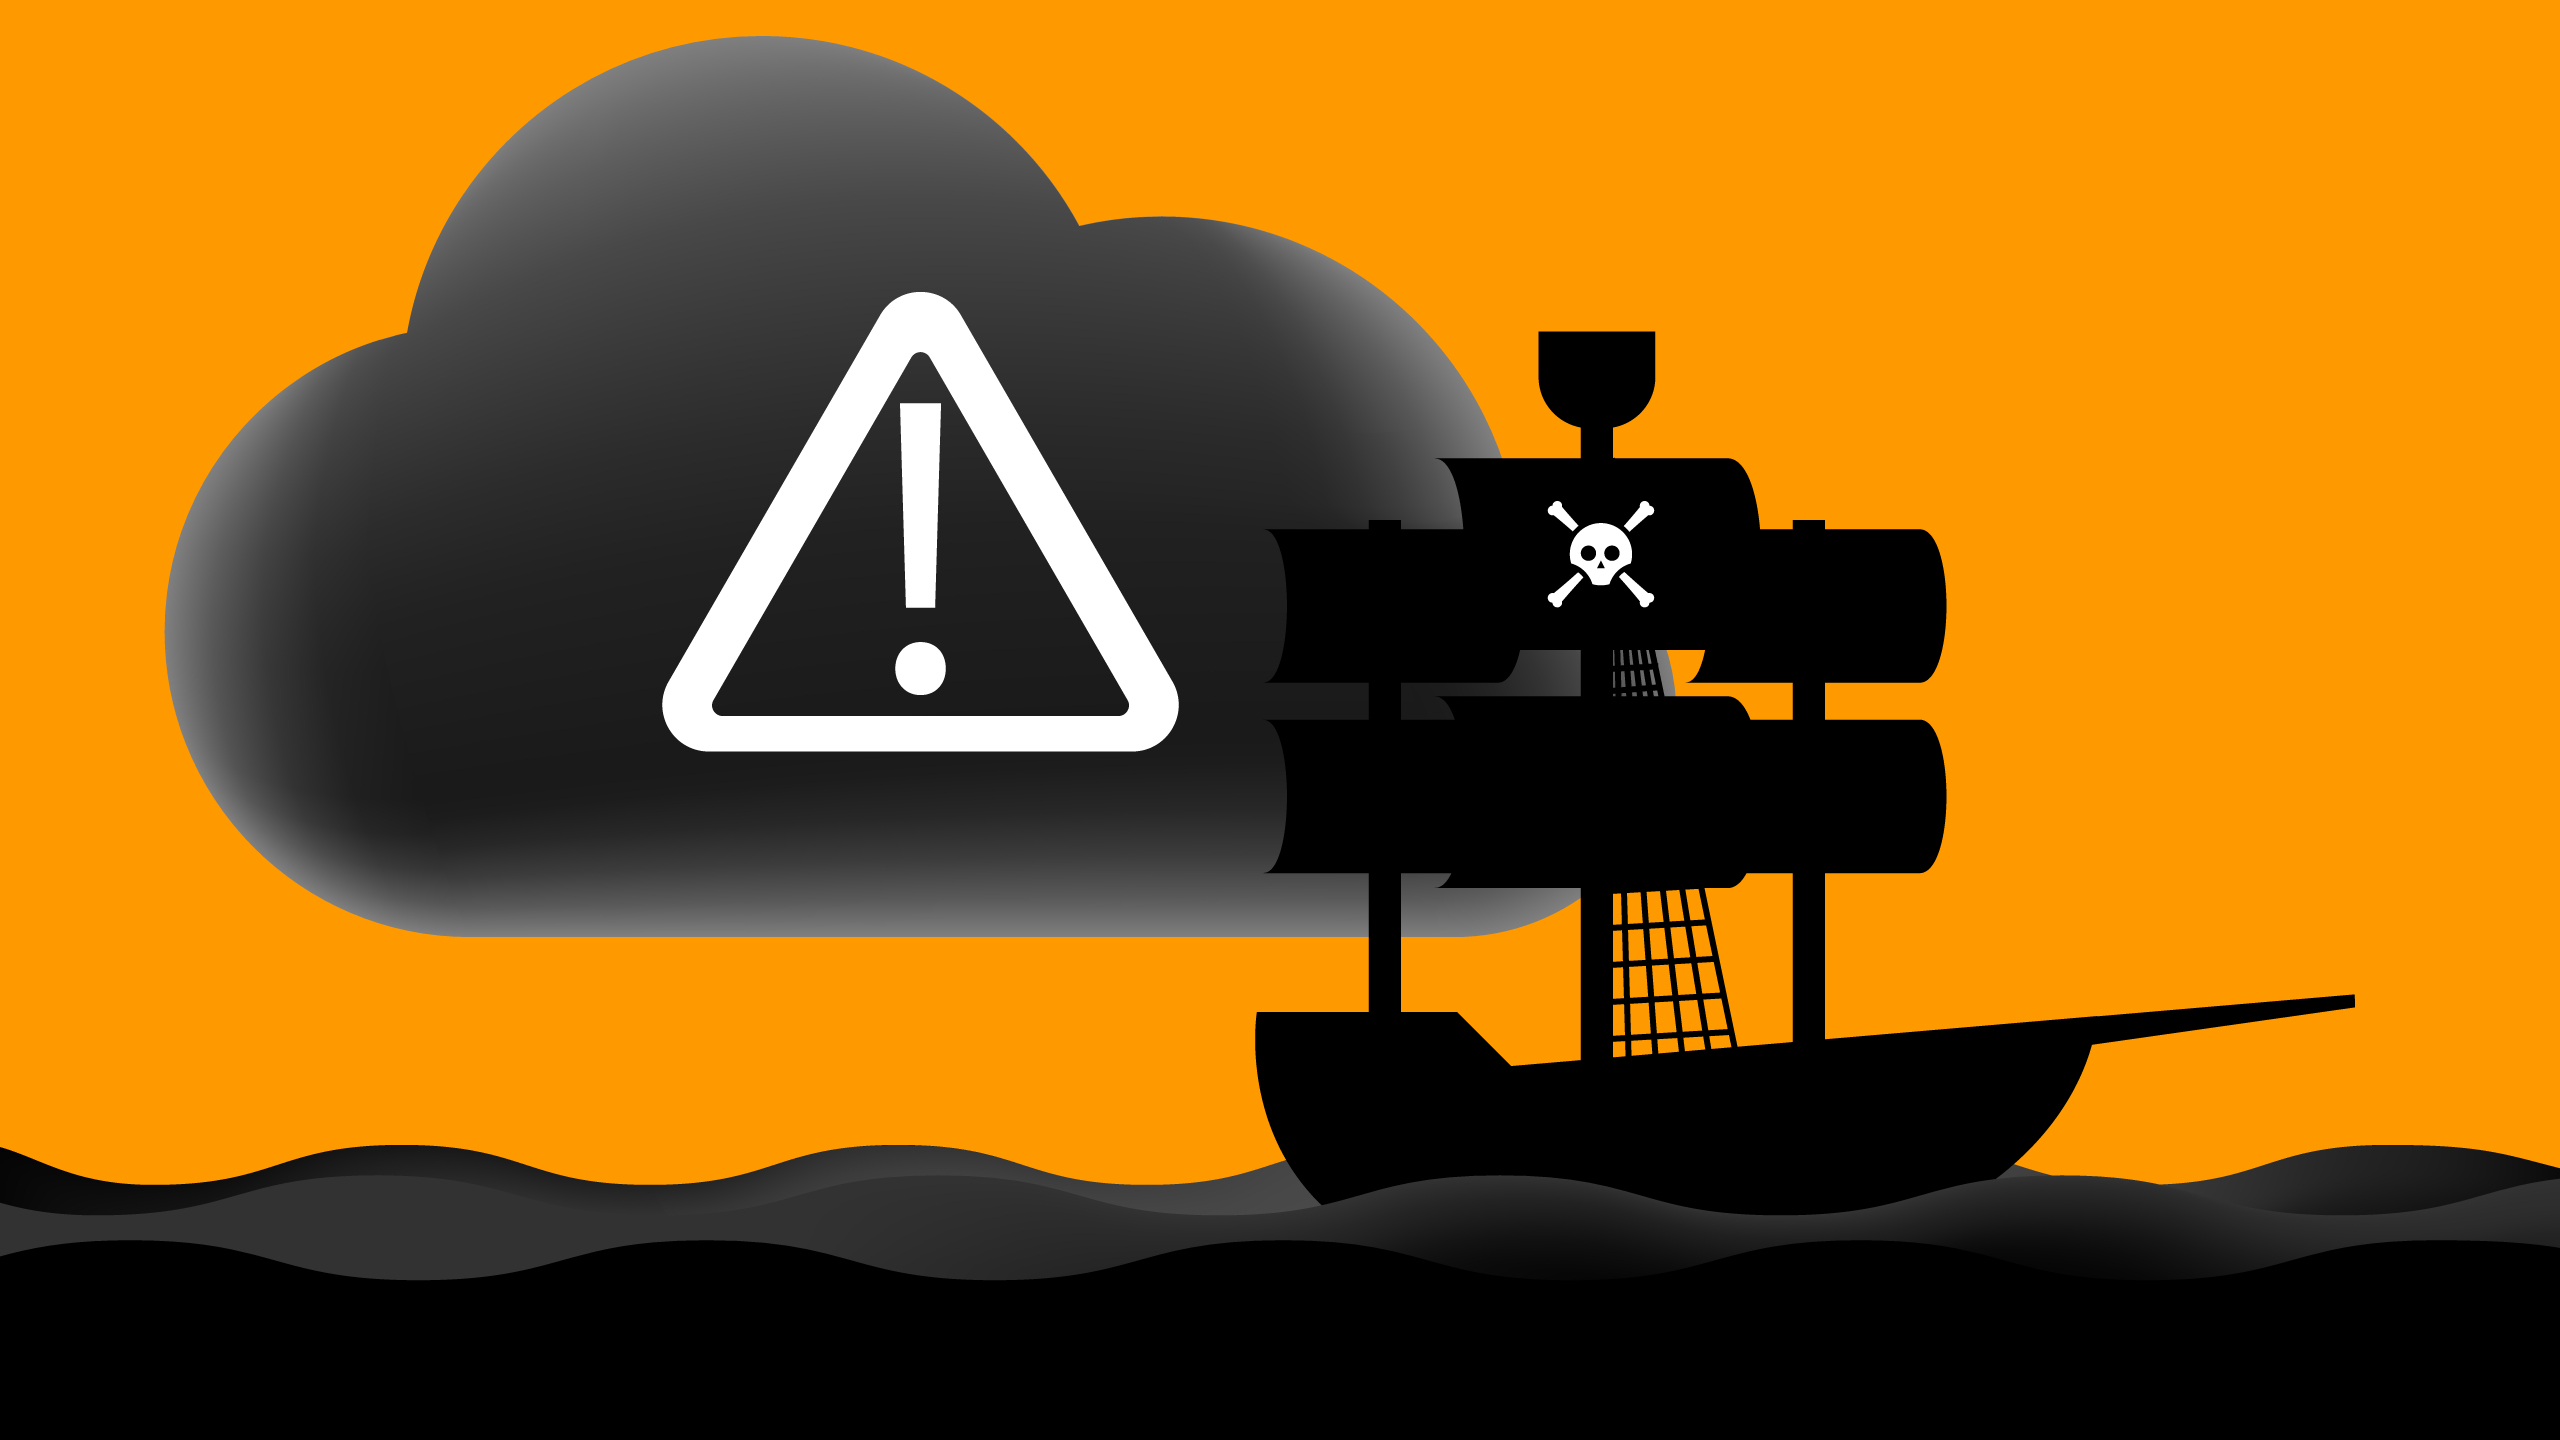 2560x1440 Movie pirate? Don't trust Plex Cloud | TechCrunch